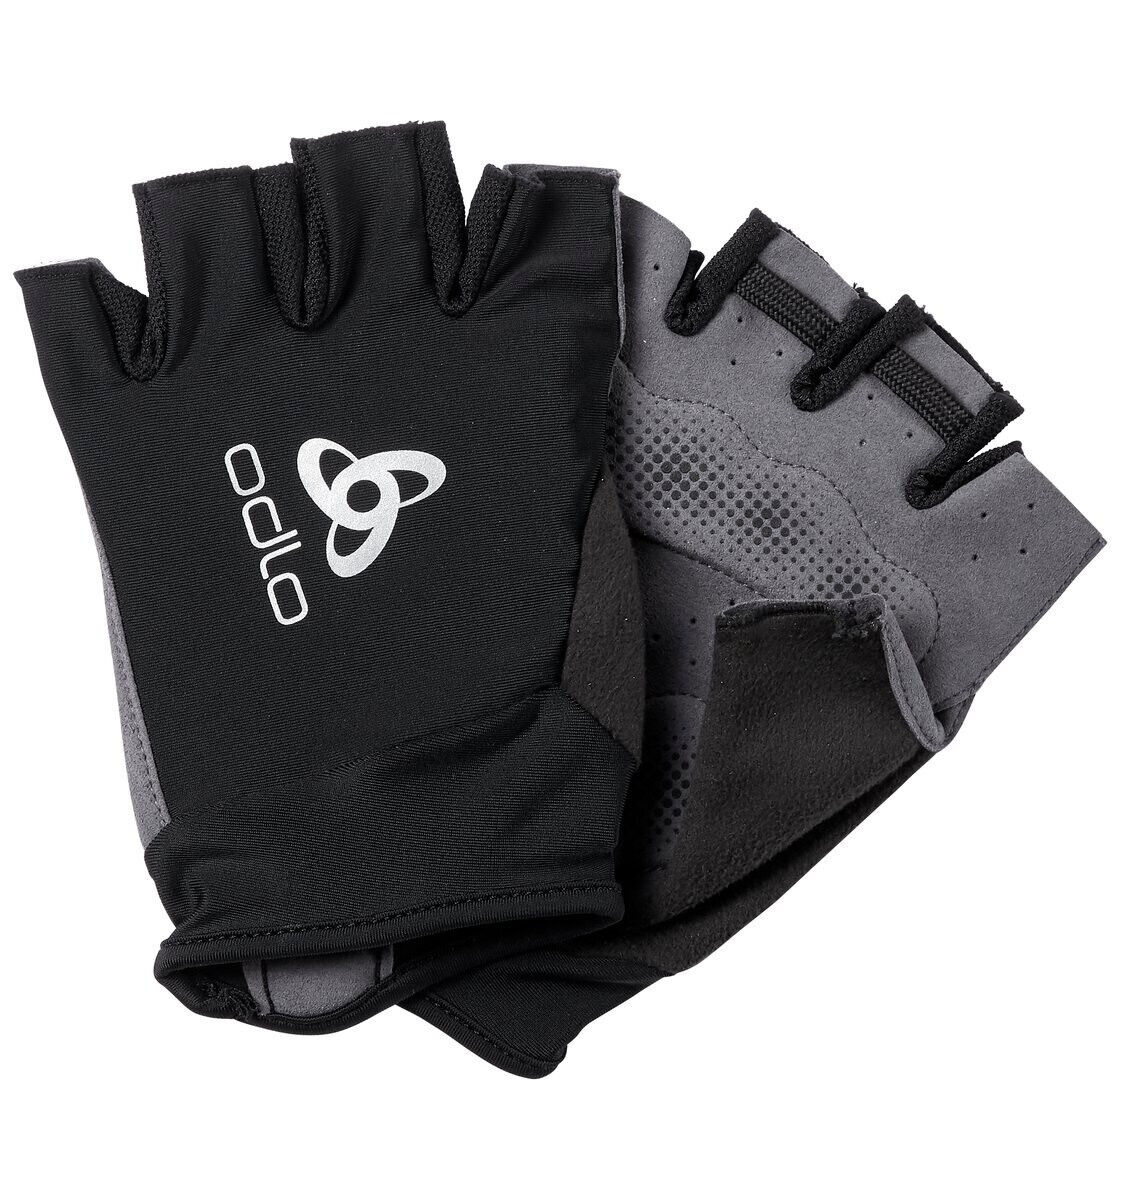 Odlo Gloves Fingerless Active Road - Cycling gloves - Men's